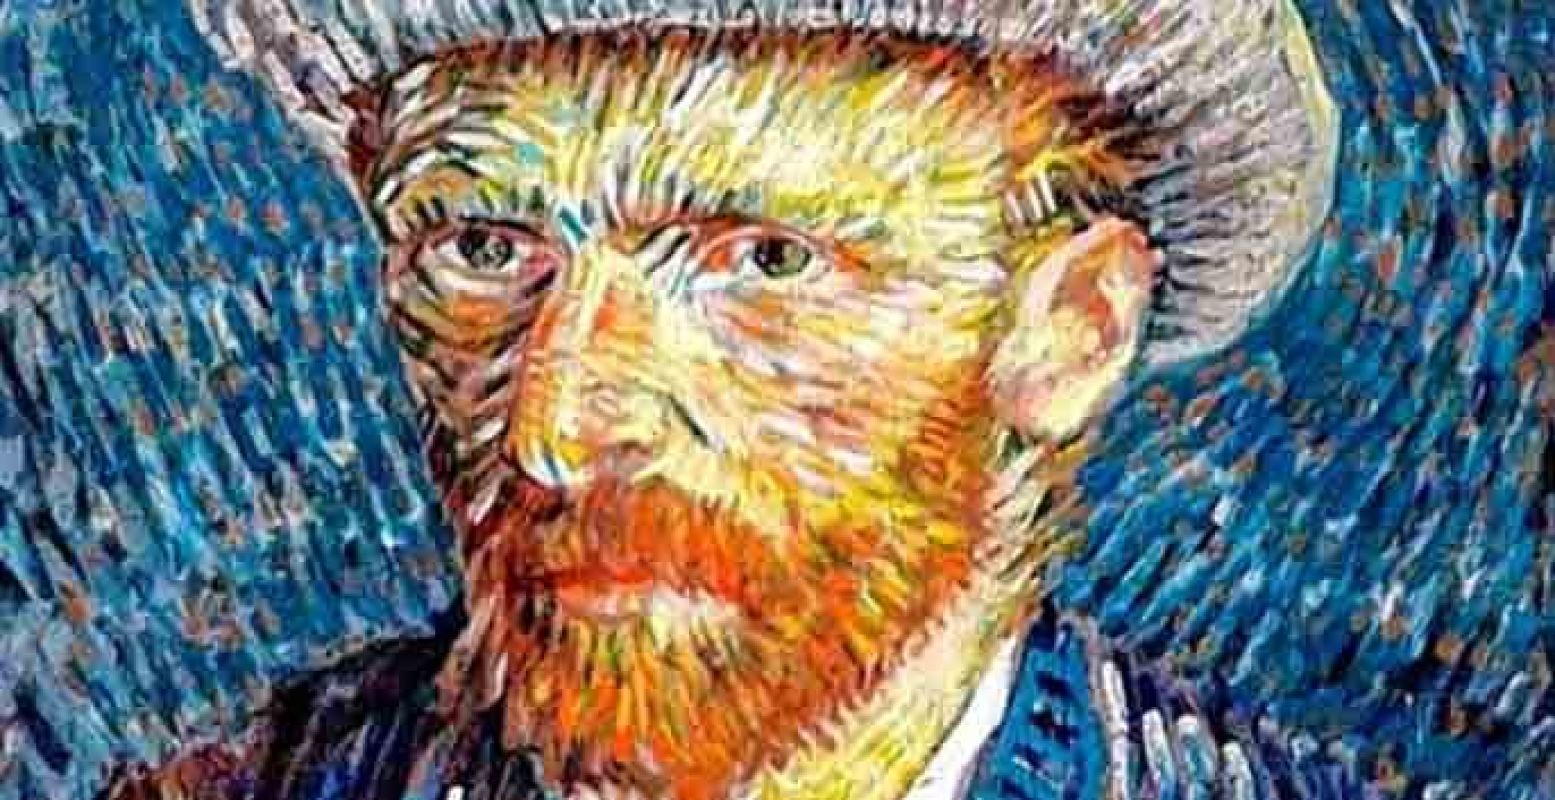 De smaak van Vincent van Gogh staat centraal op deze creatieve familiedag.